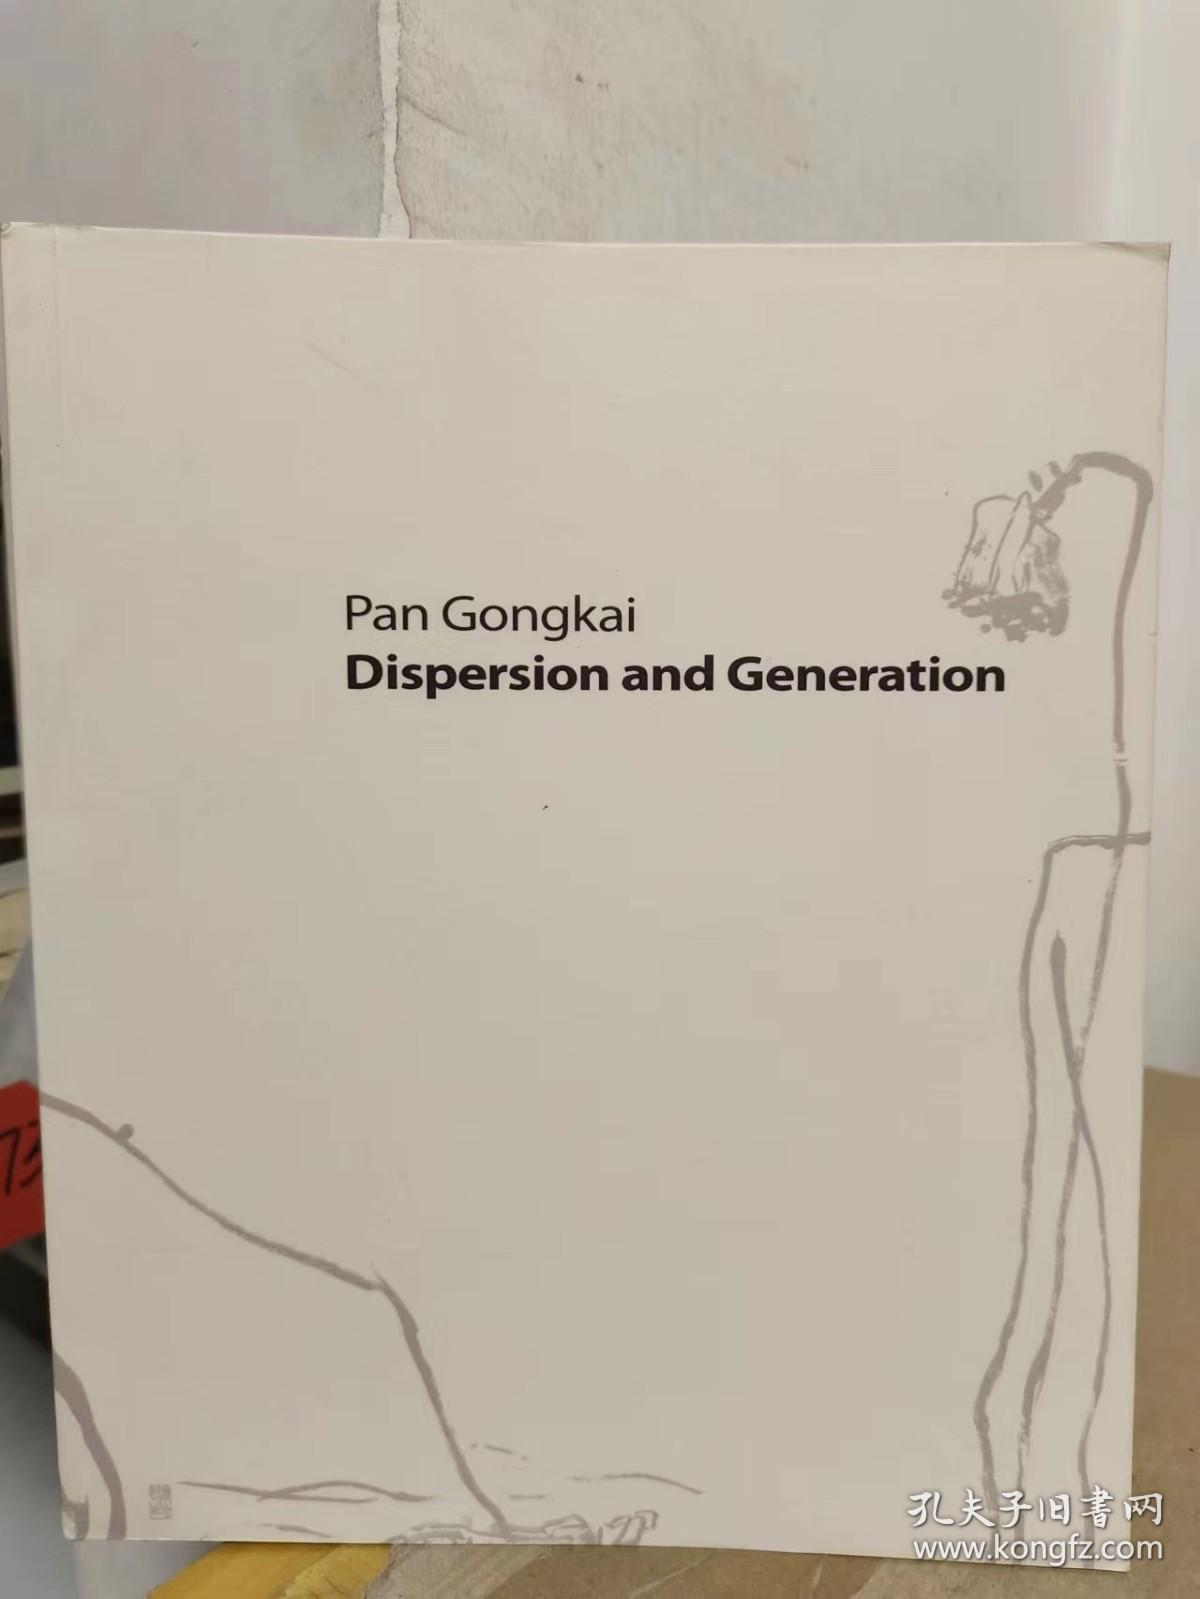 PAN GONGKAI DISPERSION AND GENERATION【1213】